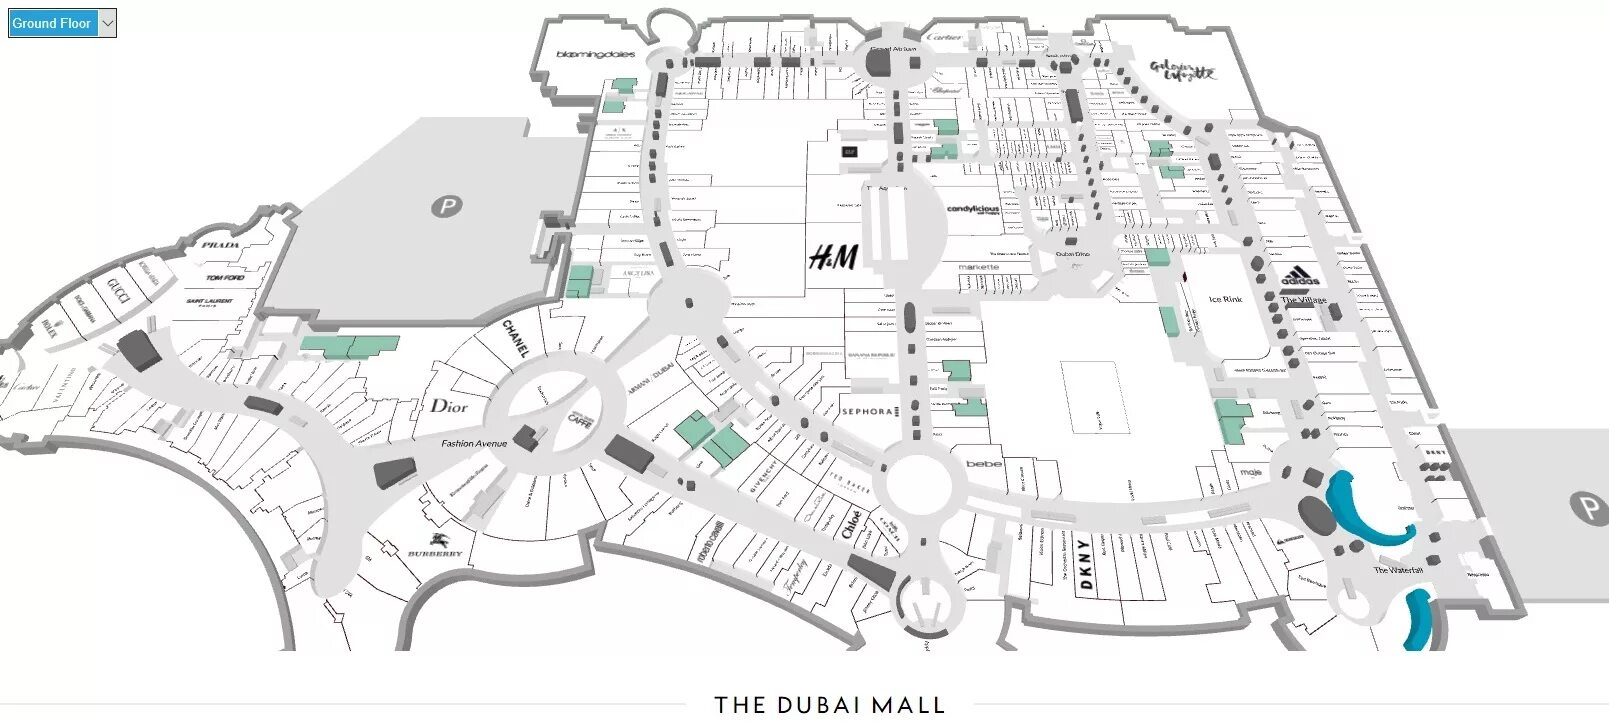 Дубай Молл магазины схема. Торговый центр Дубай Молл планировка. Дубай Молл карта 1 этаж. Дубай Молл план магазинов.